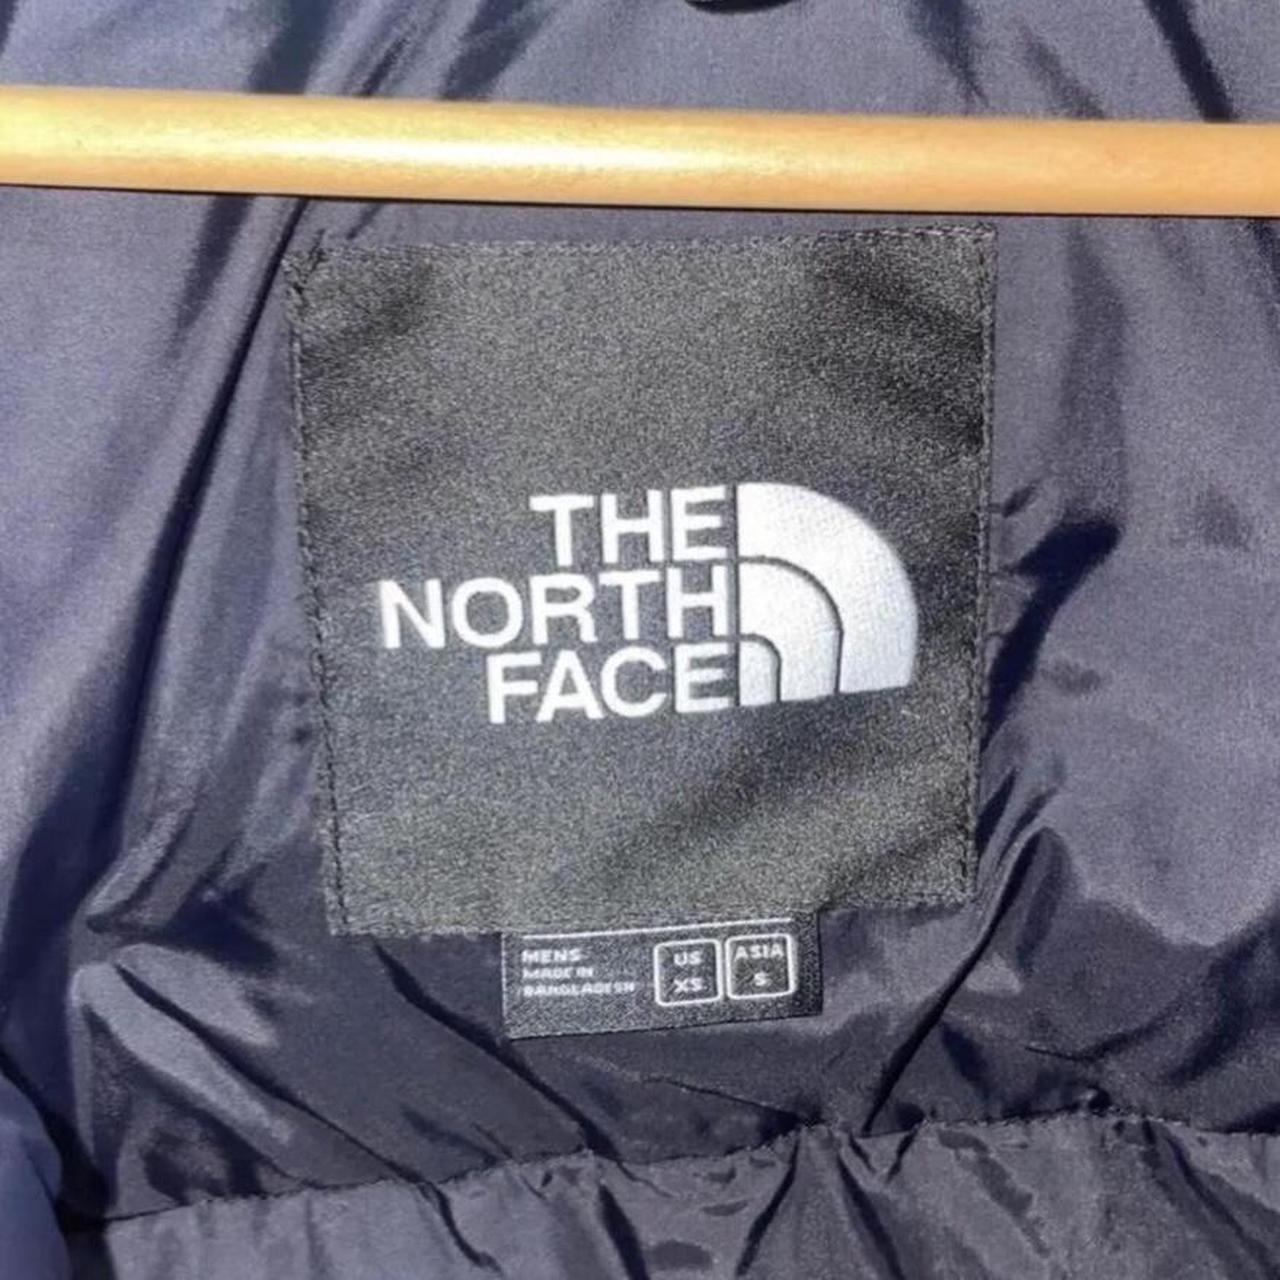 North face jacket - Depop